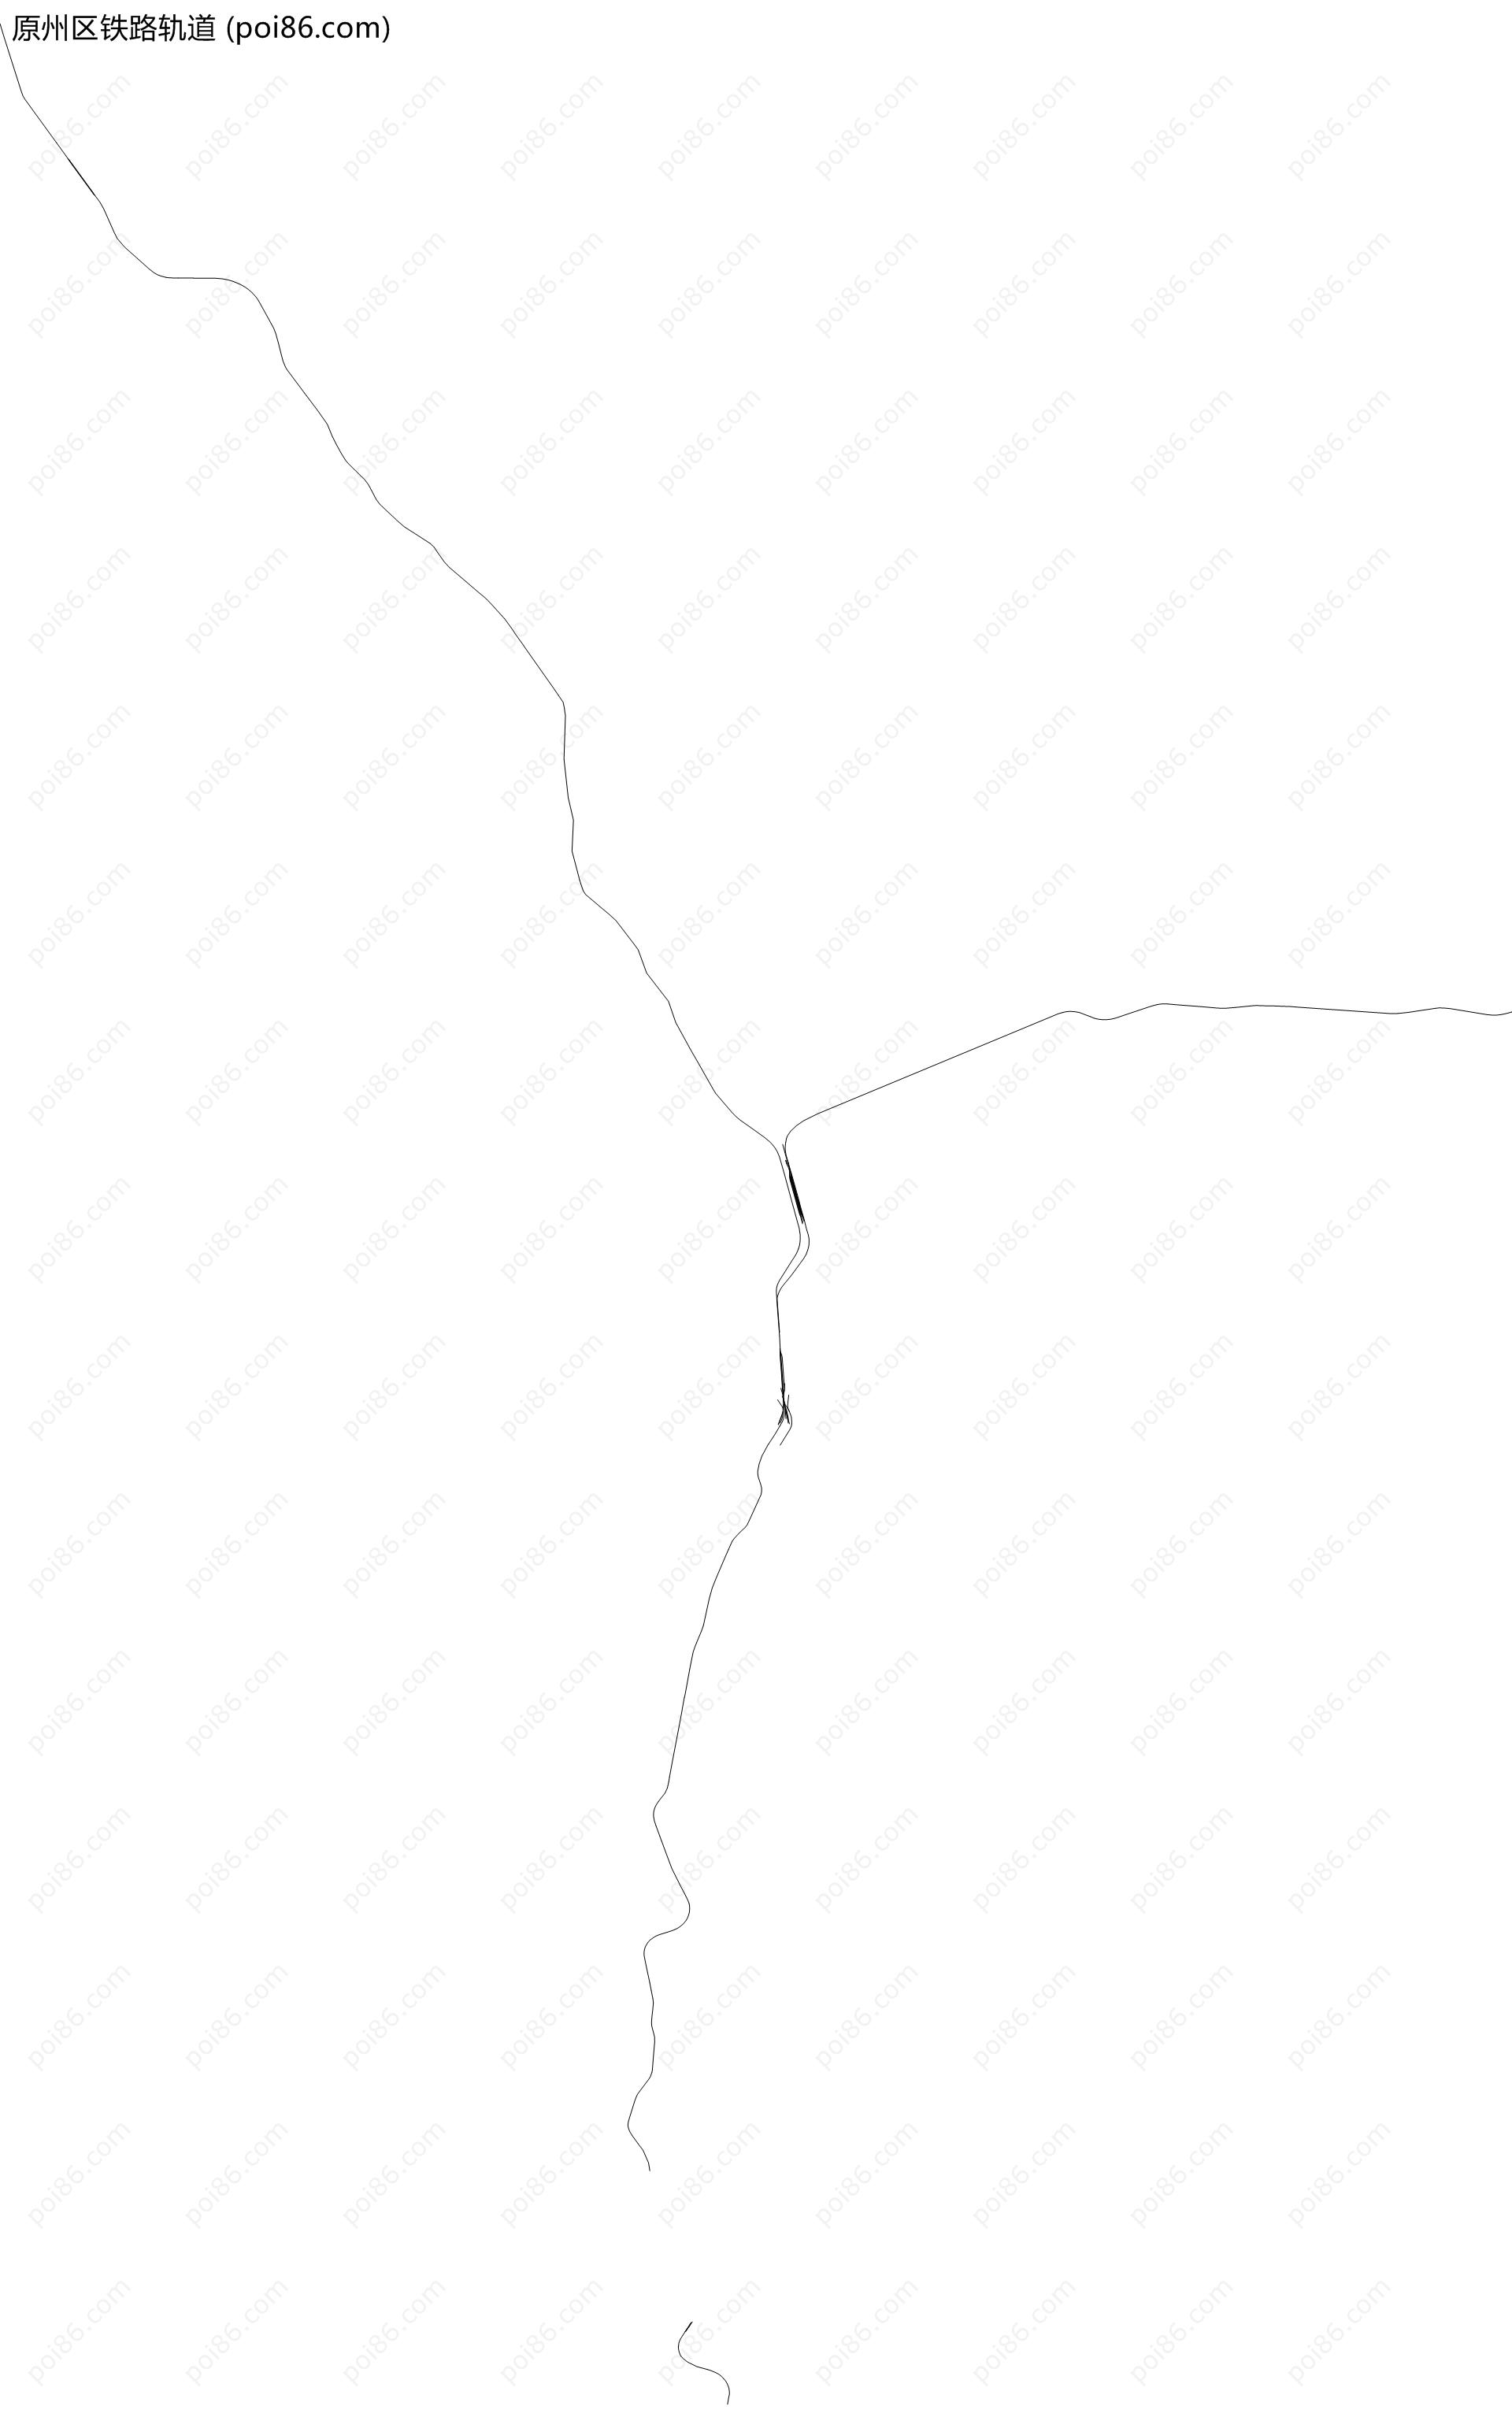 原州区铁路轨道地图